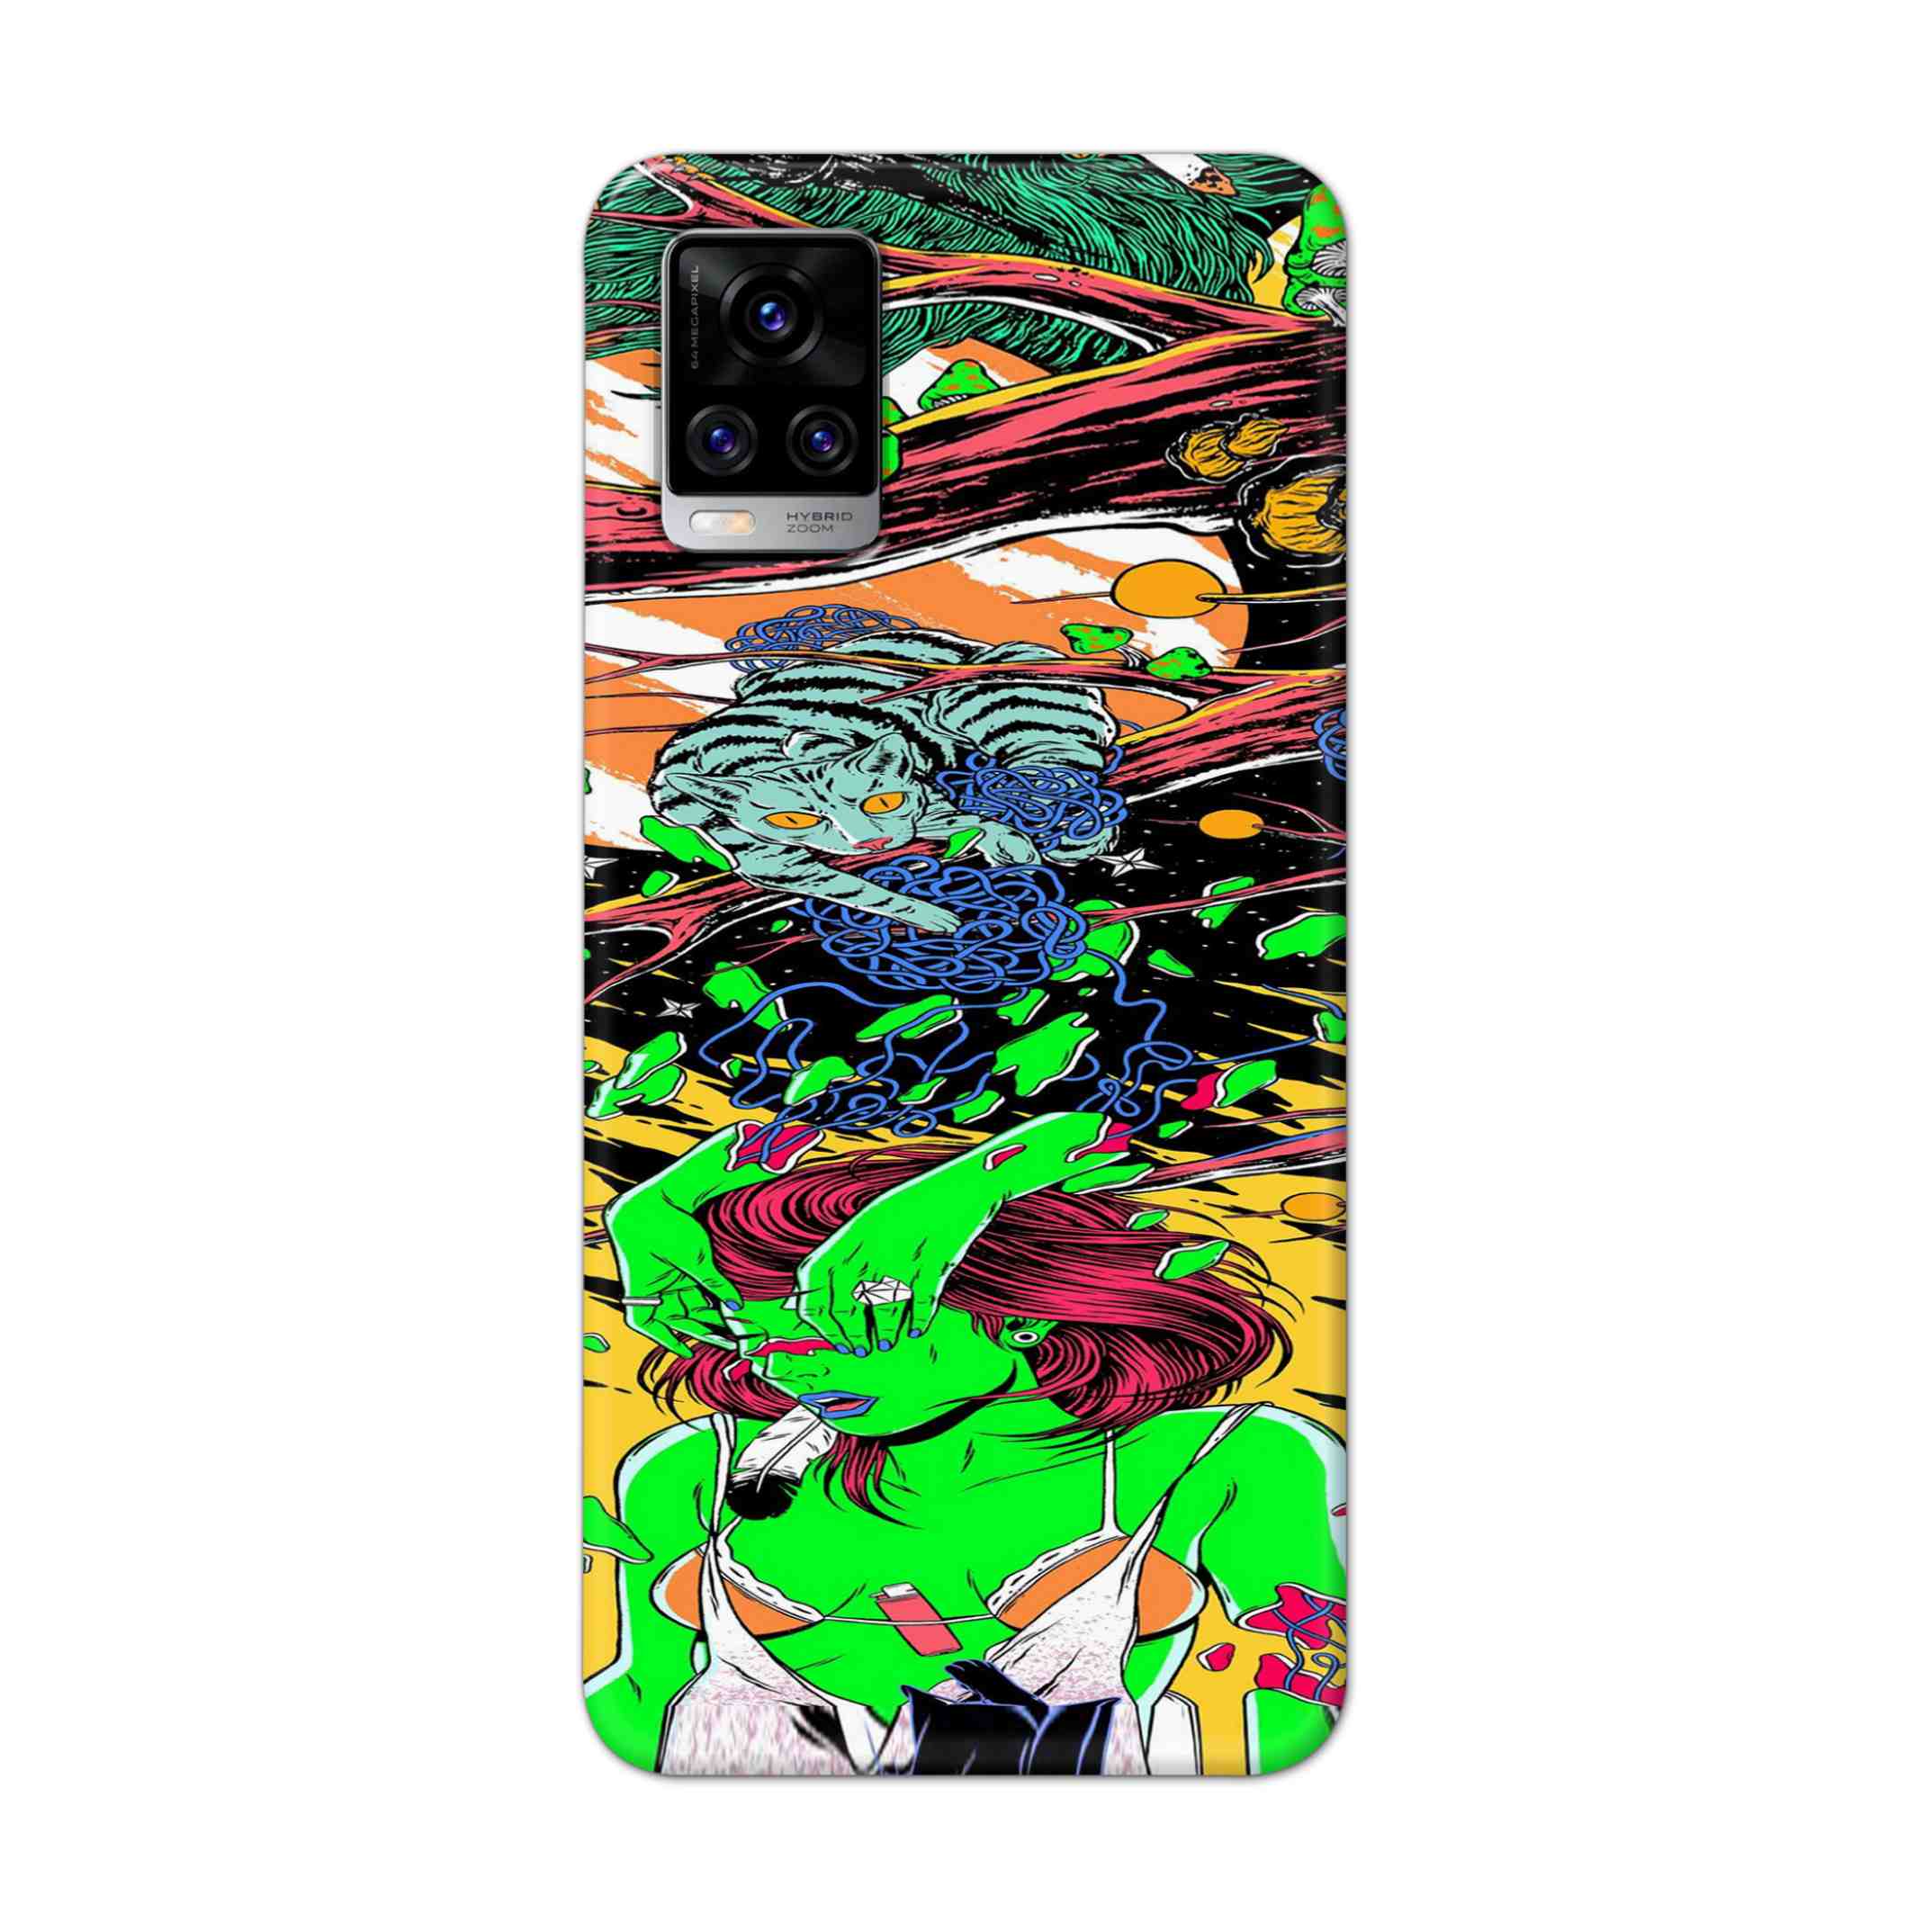 Buy Green Girl Art Hard Back Mobile Phone Case Cover For Vivo V20 Pro Online